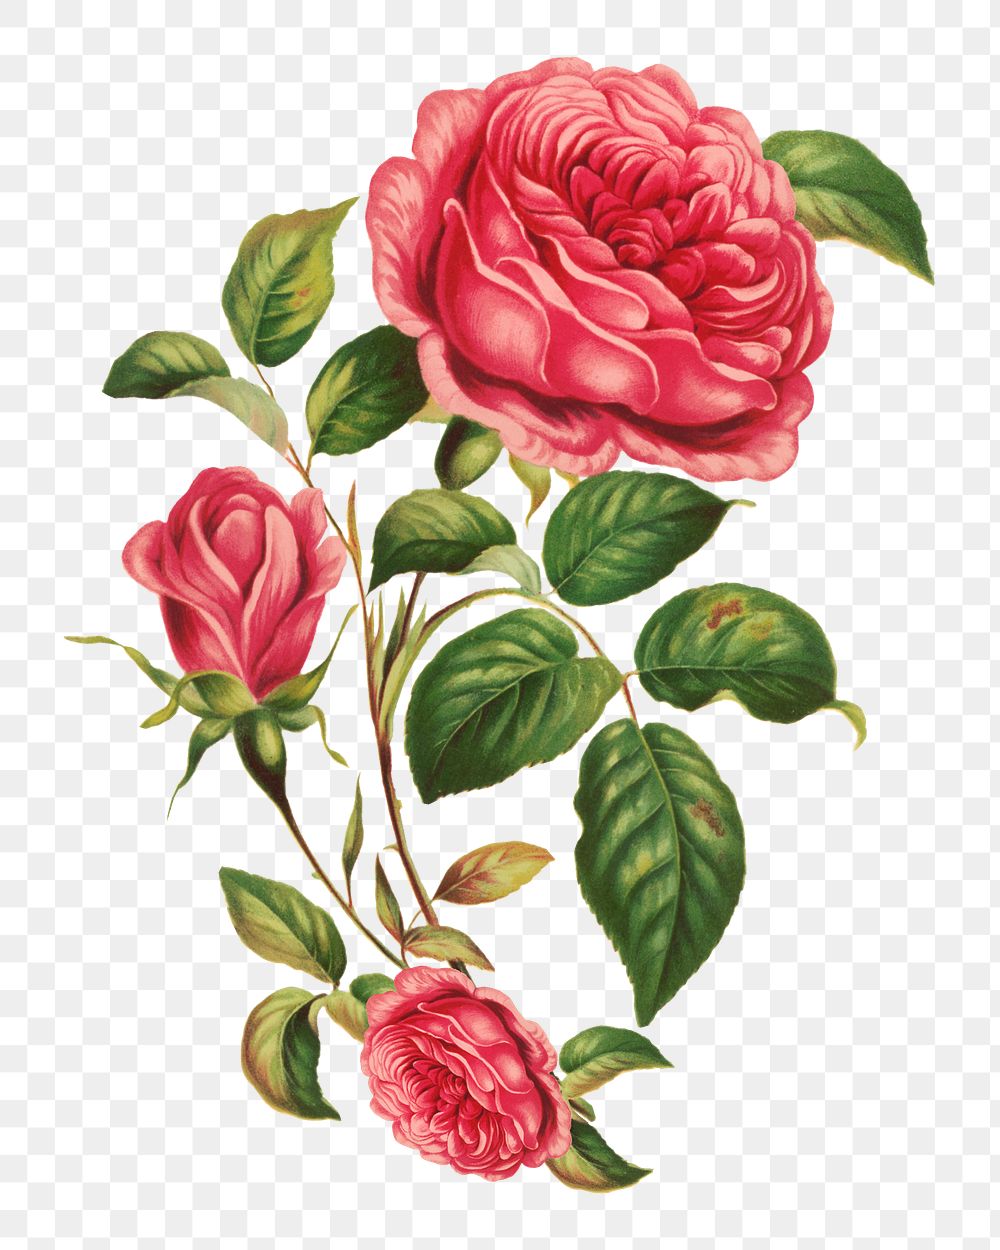 Blooming red rose png vintage flower, transparent background